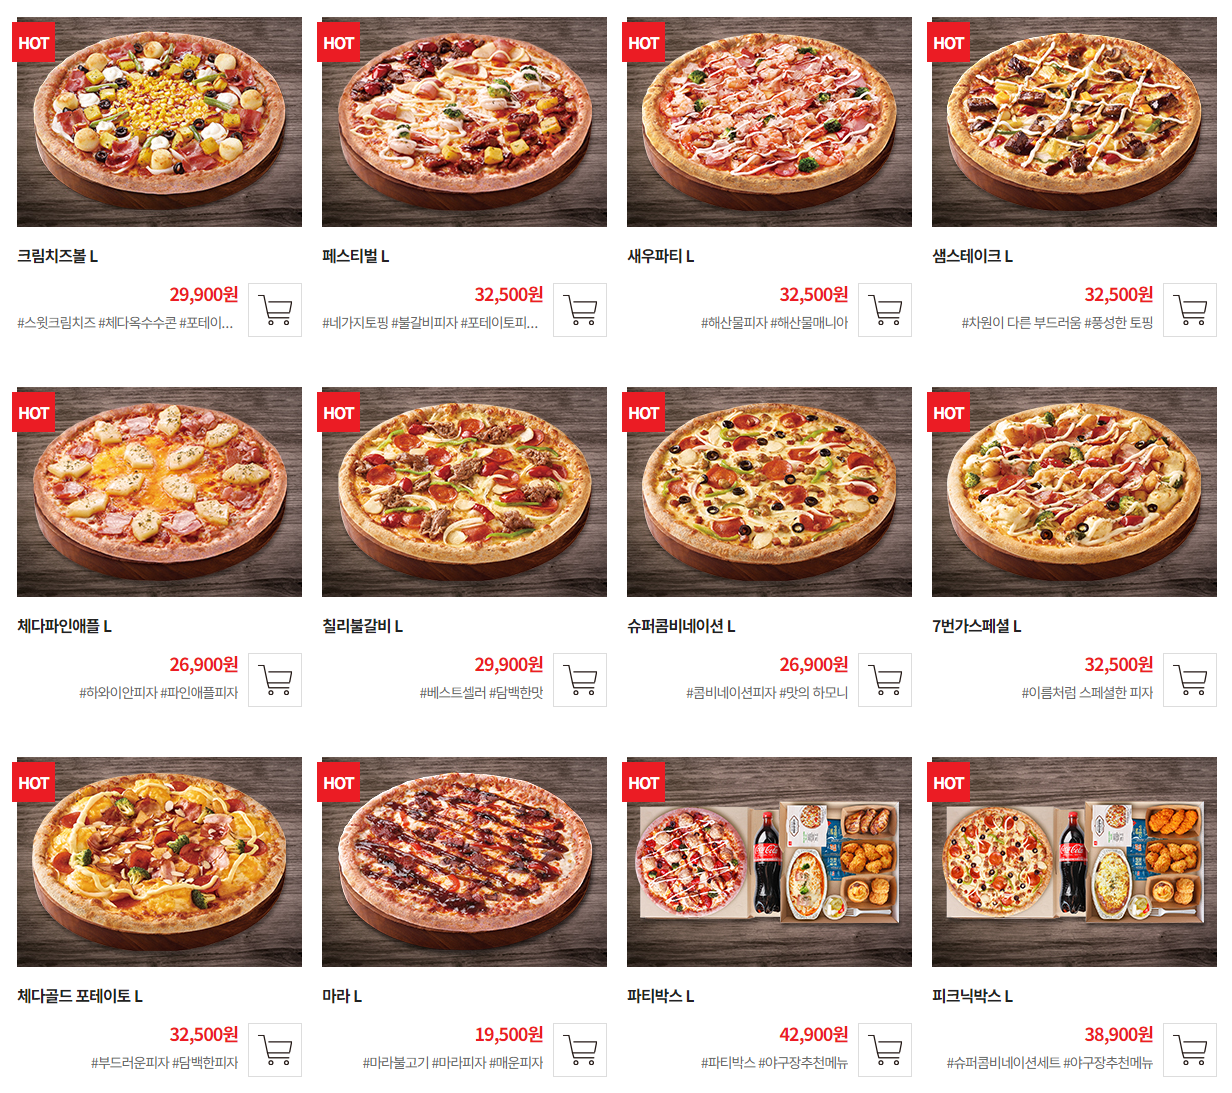 7번가 피자 인기 메뉴